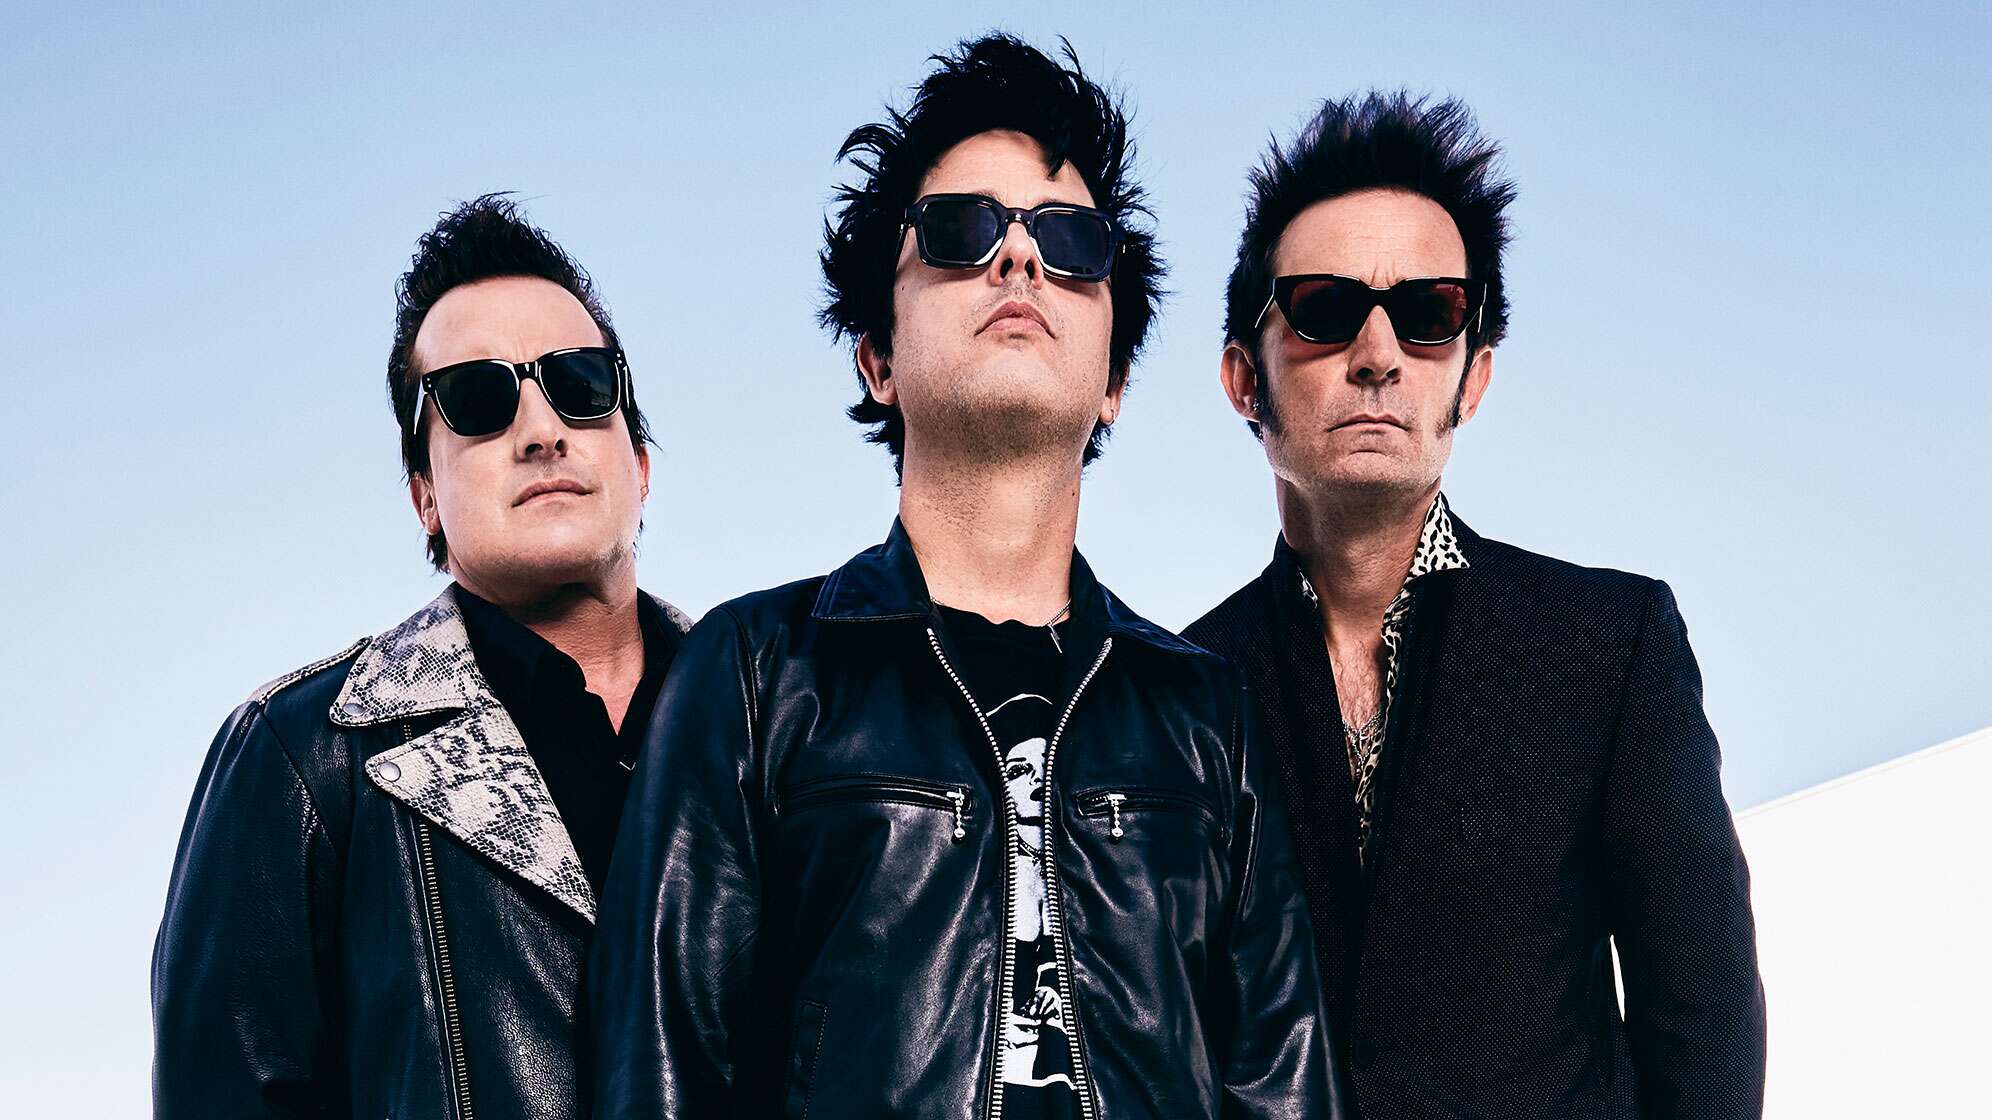 Das Pressefoto der Band Green Day - von links nach rechts: Tré Cool, Billie Joe Armstrong und Mike Dirnt.